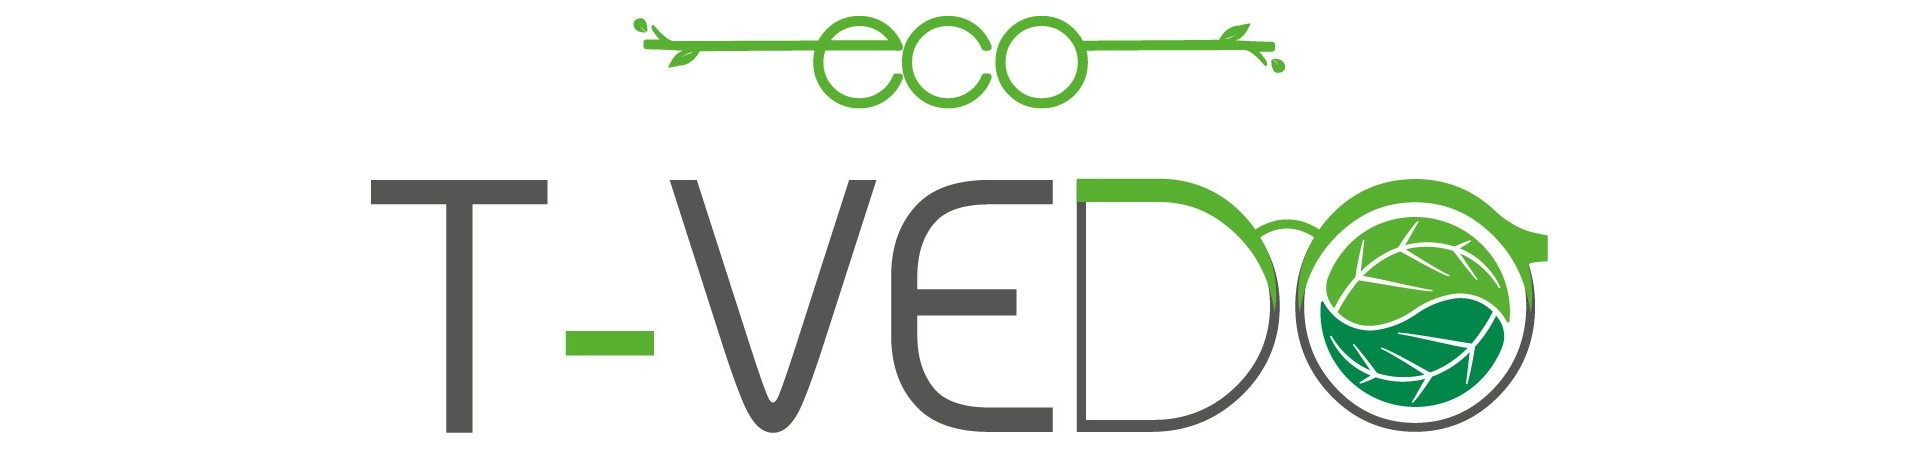 T-Vedo Eco